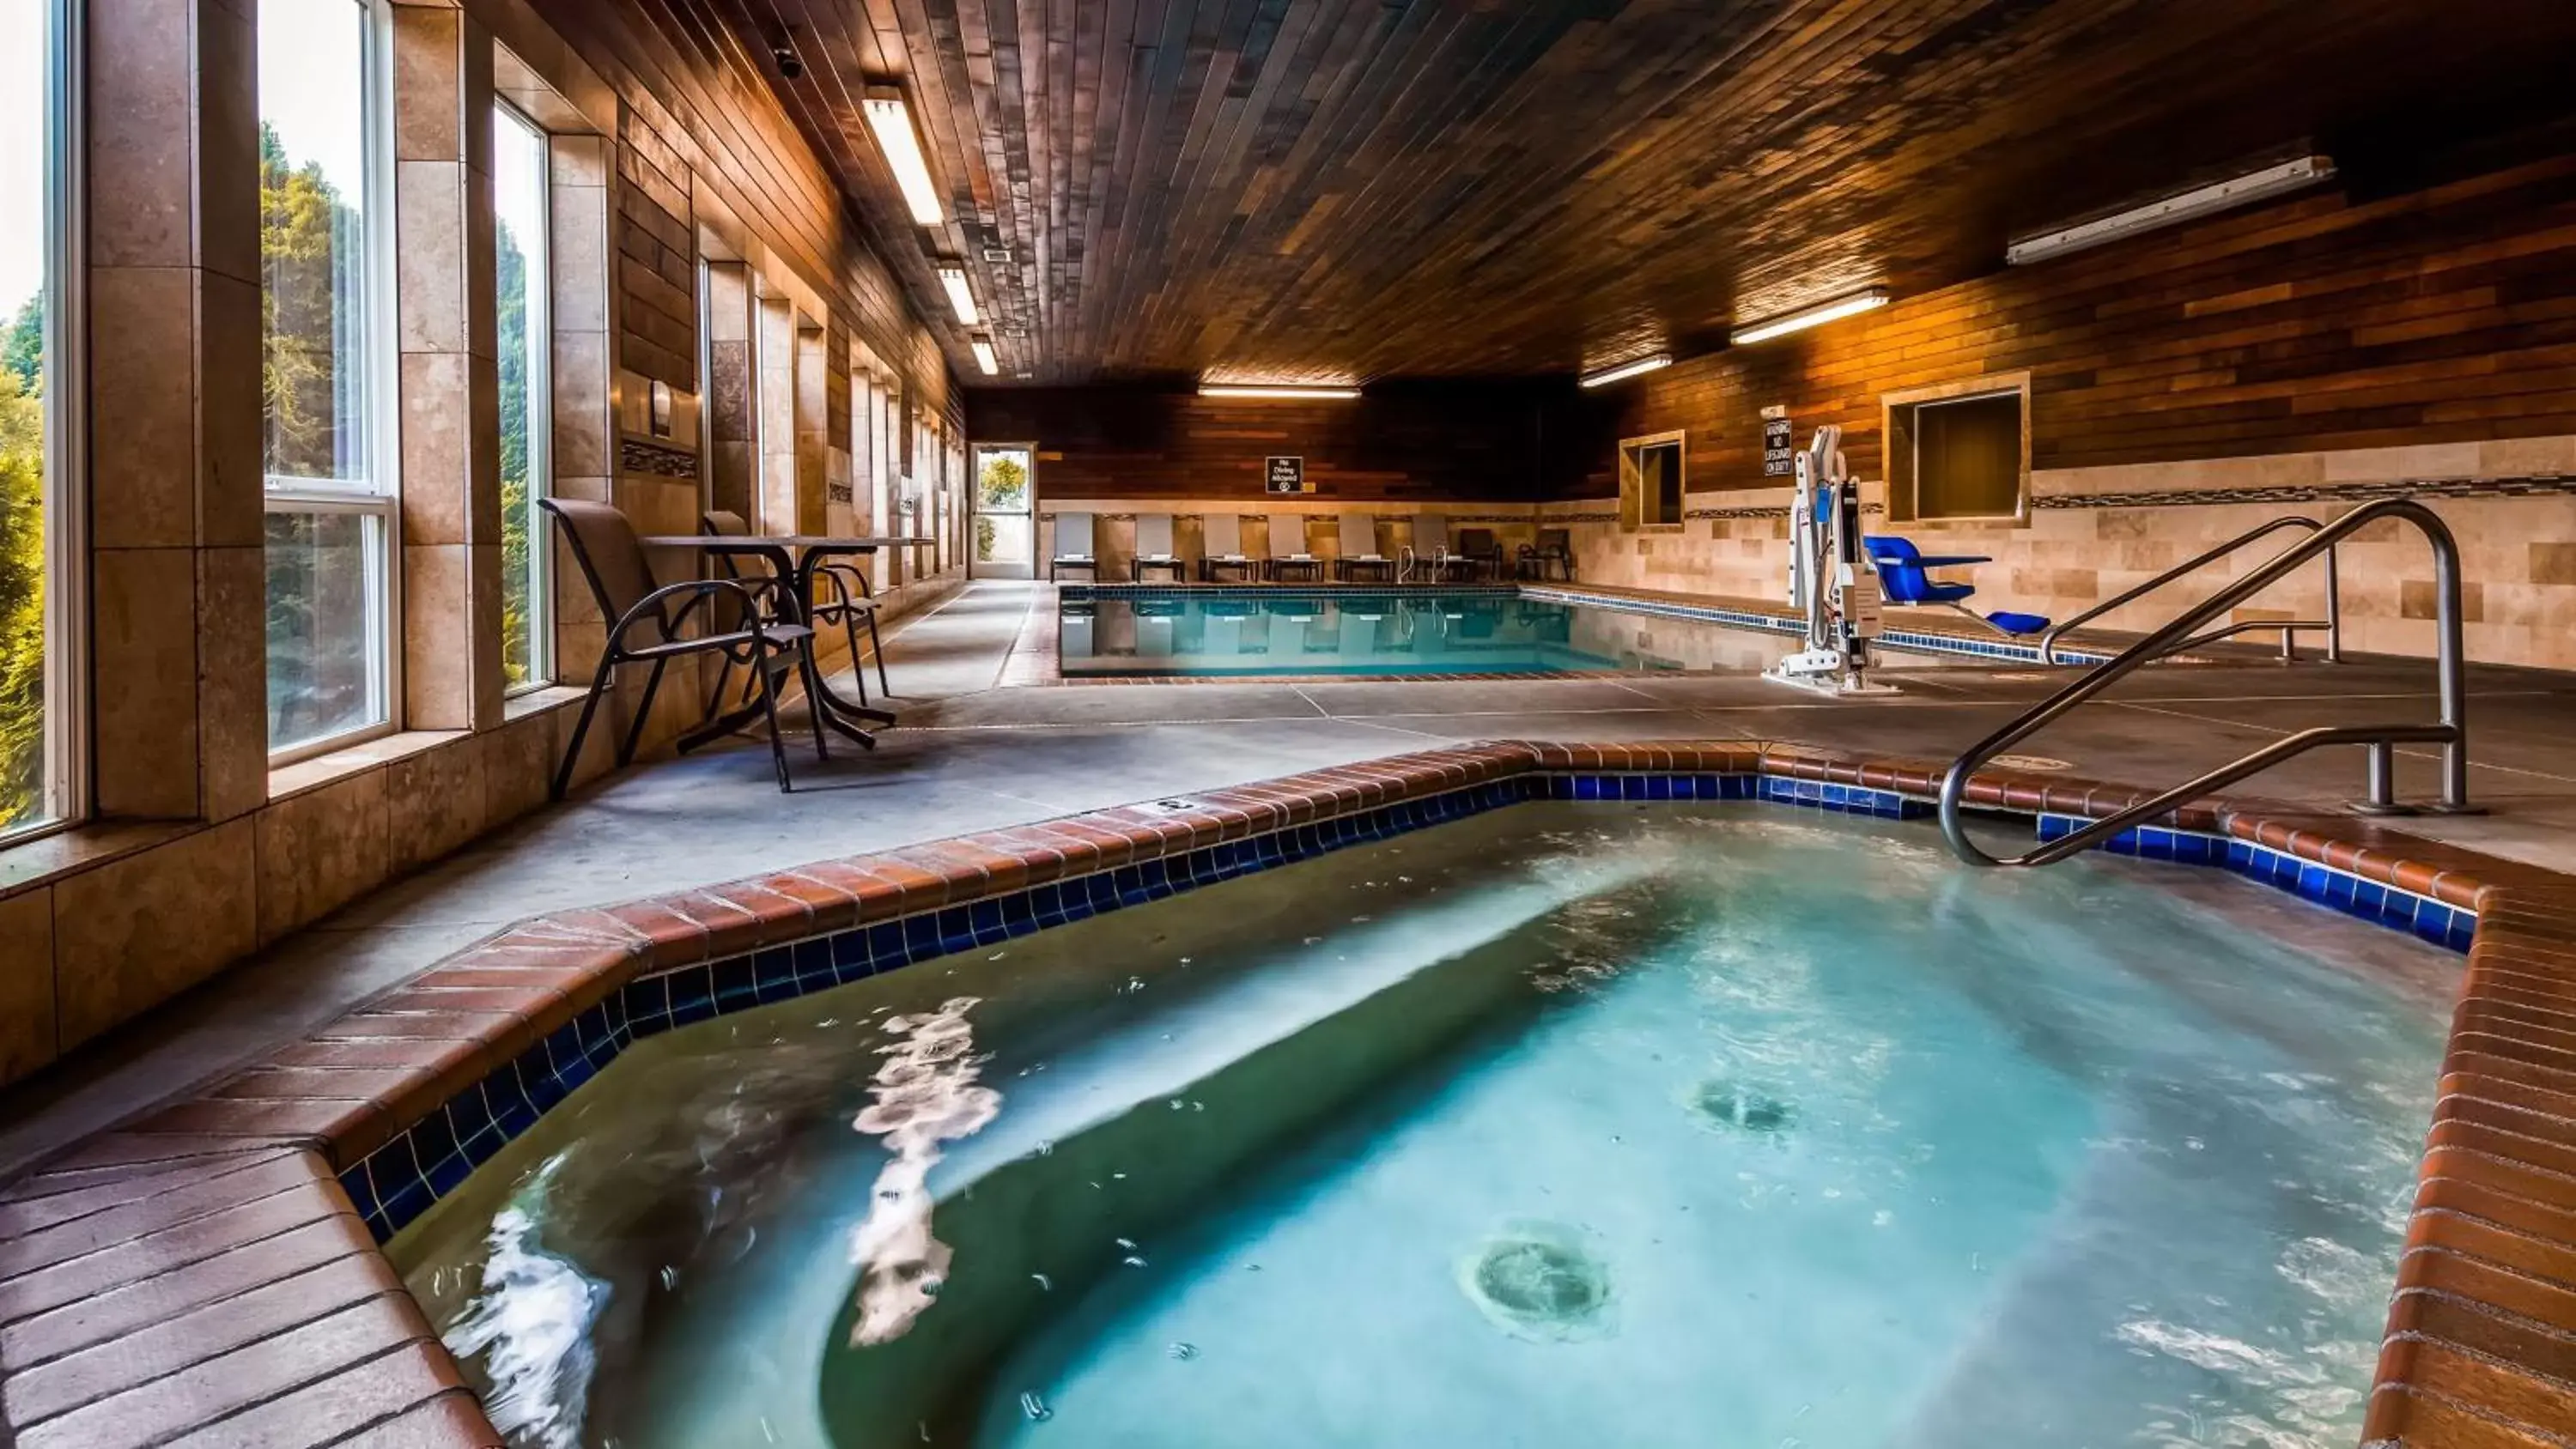 On site, Swimming Pool in Best Western Plus Landmark Inn